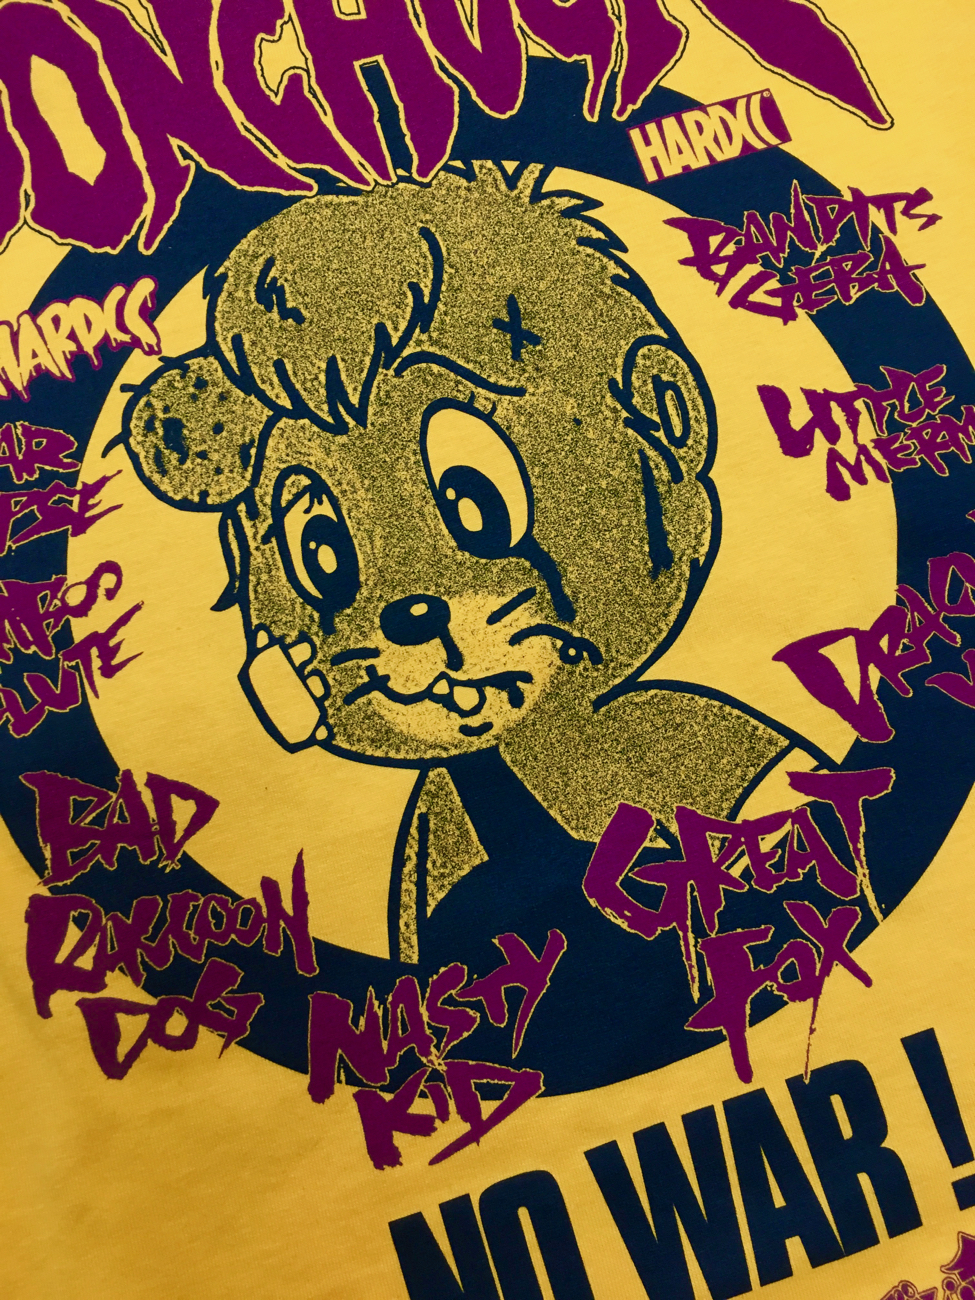 様々な困難に立ち向かえ ドン チャック 往年の名作アニメ ドン チャック 物語 のコラボレーションtシャツを2種発売 有限会社ハードコアチョコレートのプレスリリース